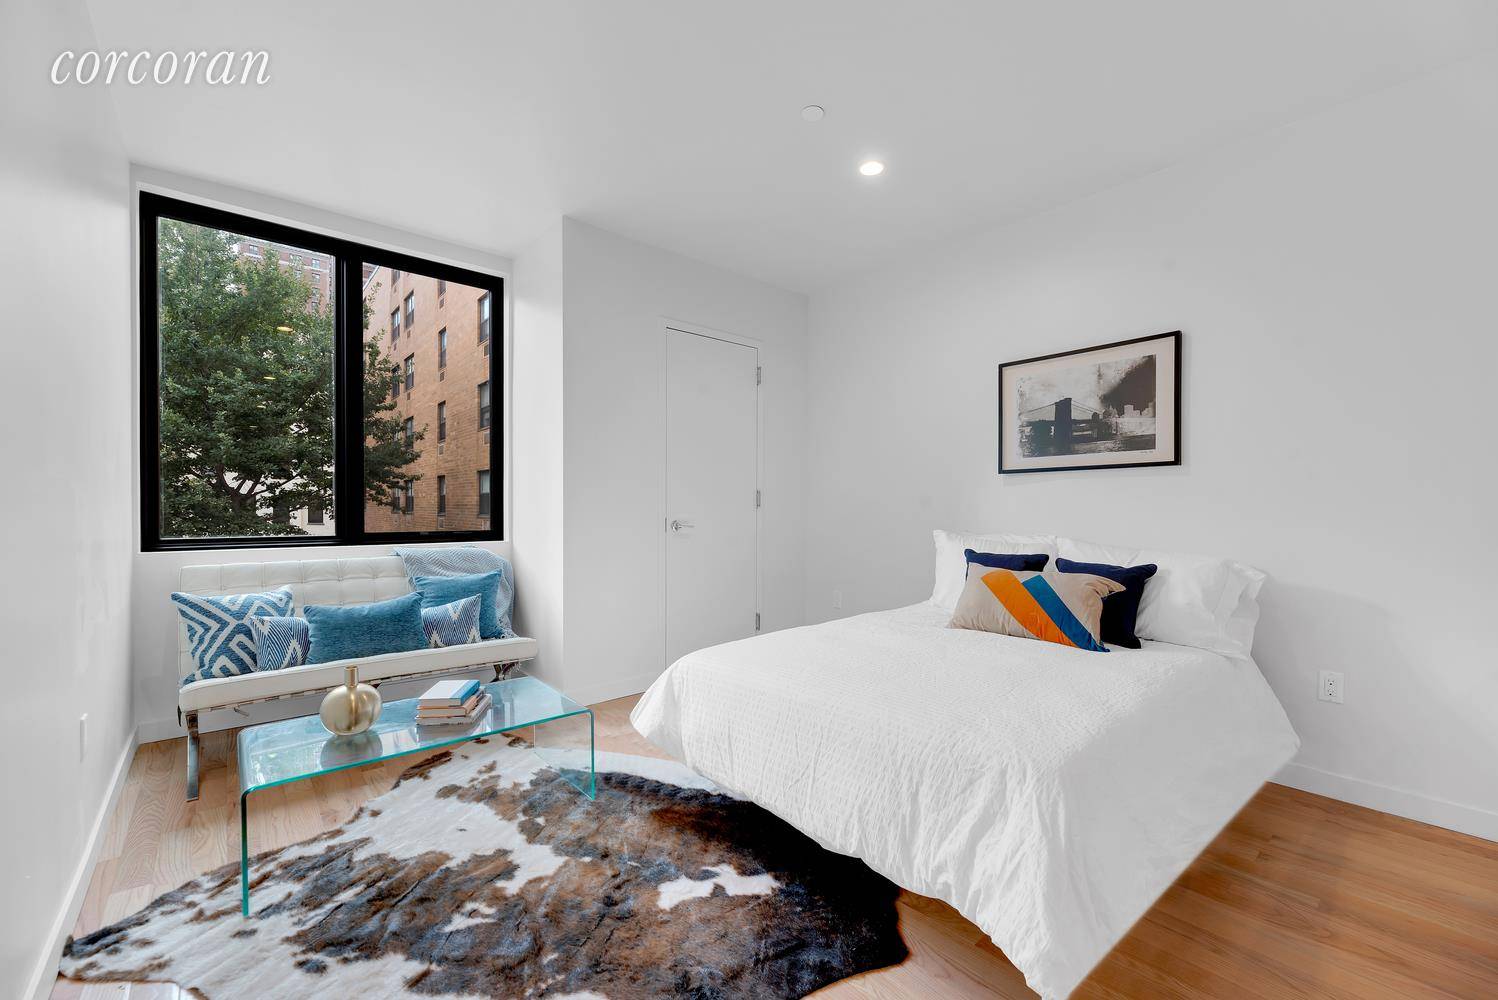 This beautifully designed studio condominium features amenities not common in most studios.